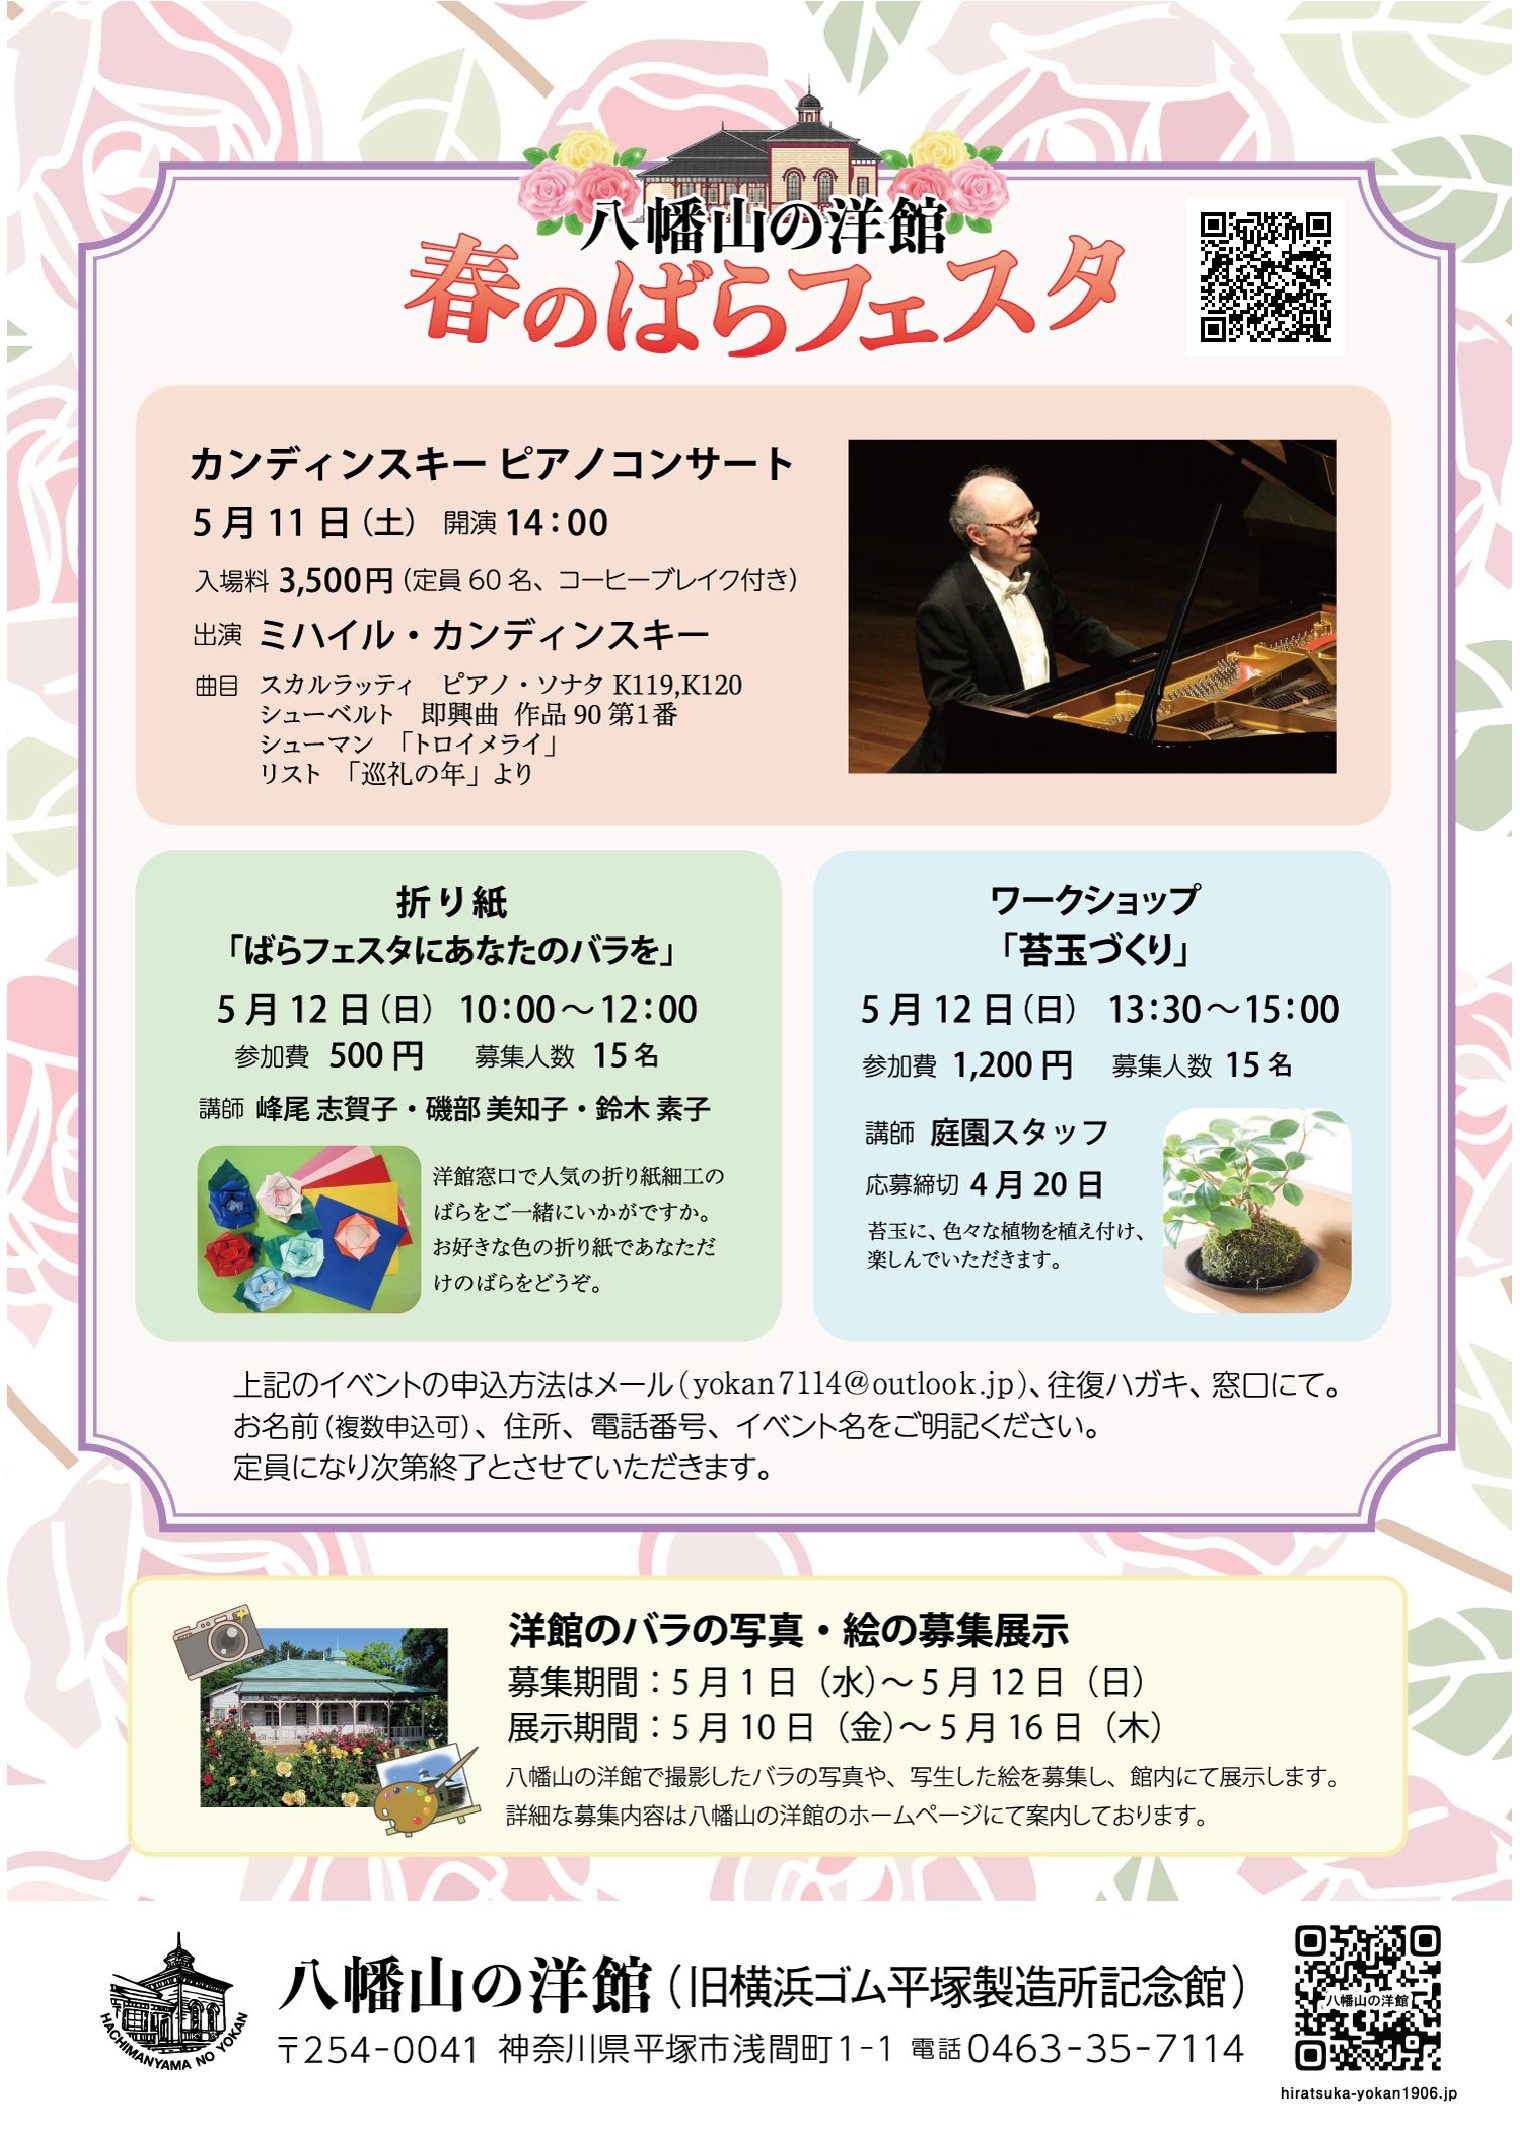 八幡山の洋館 春のばらフェスタ 5月11日 土曜日、12日 日曜日に開催されます。開催中いろいろな催しがあります。お楽しみください。